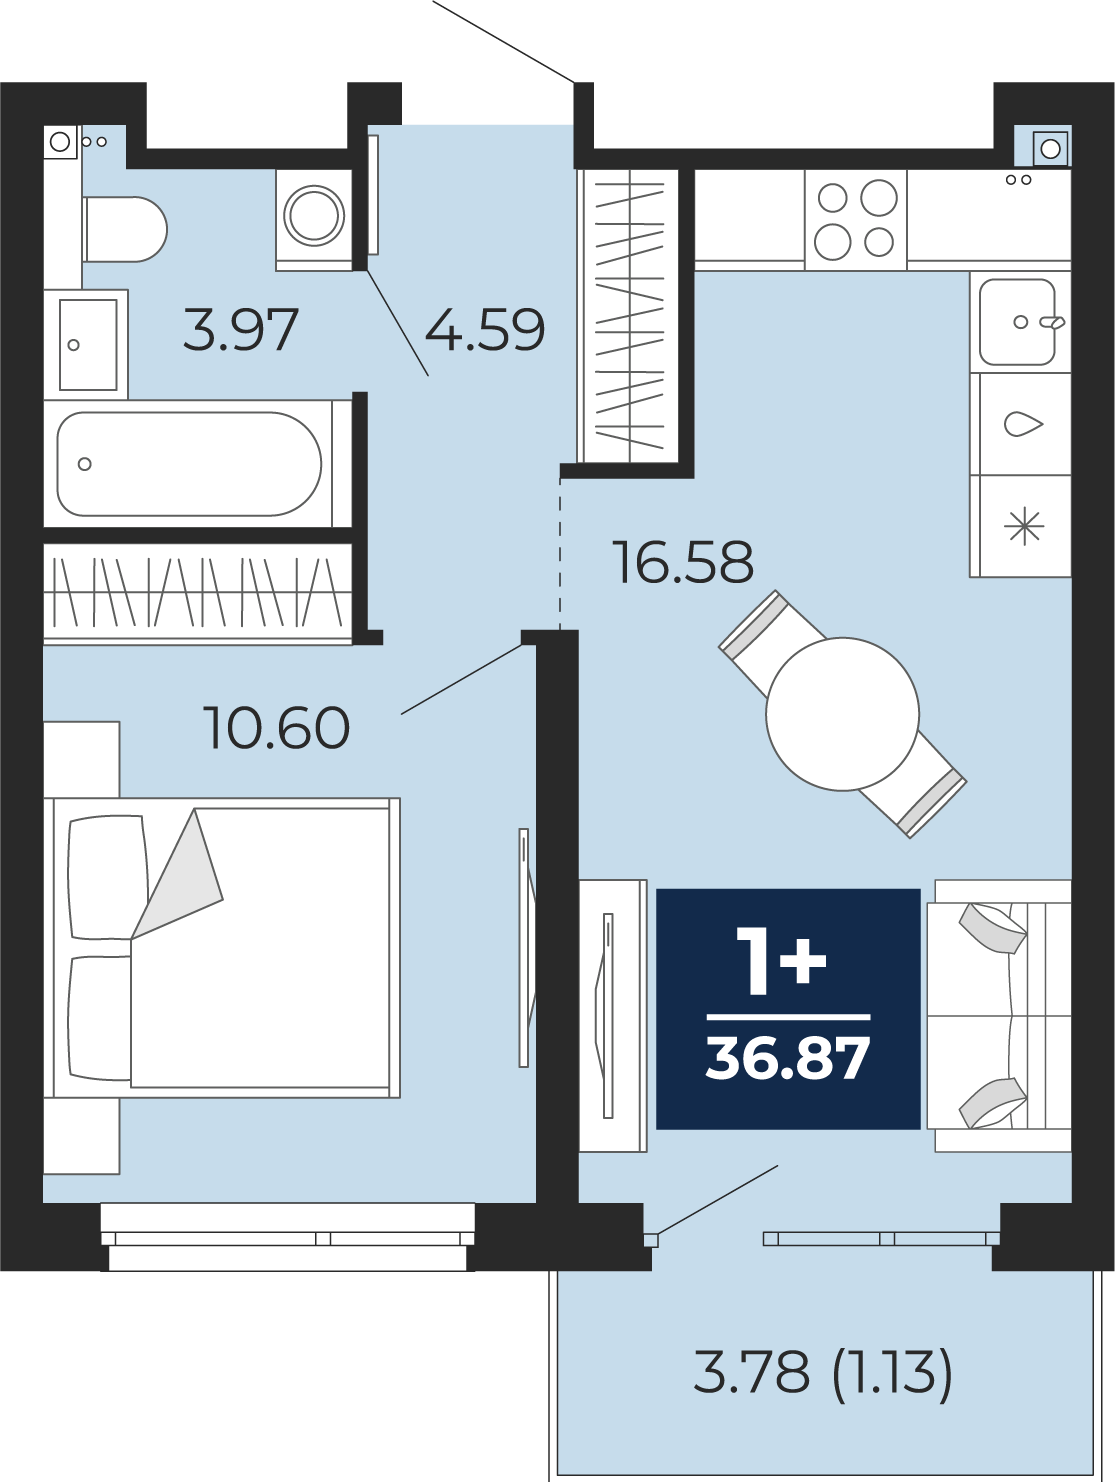 Квартира № 166, 1-комнатная, 36.87 кв. м, 6 этаж